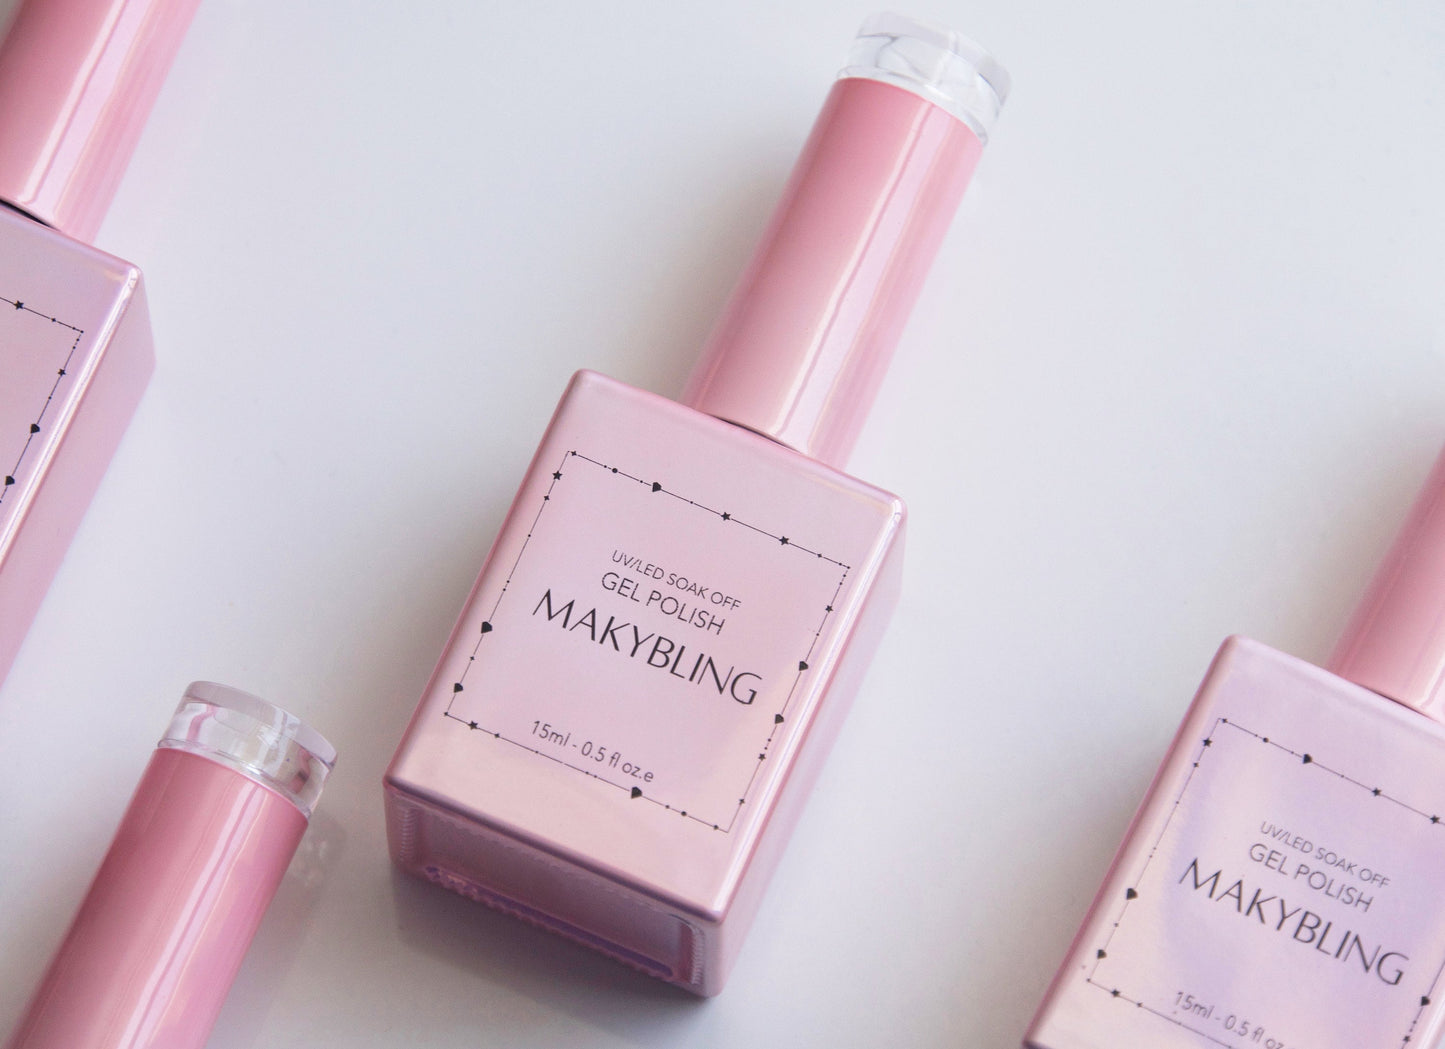 15ml Misty Rose Gel polish/ Flamingo Pink Solid color Nails/ Pastel Salmon Light nude Pink Soak off UV/Led Gel polish Manicure -Makybling